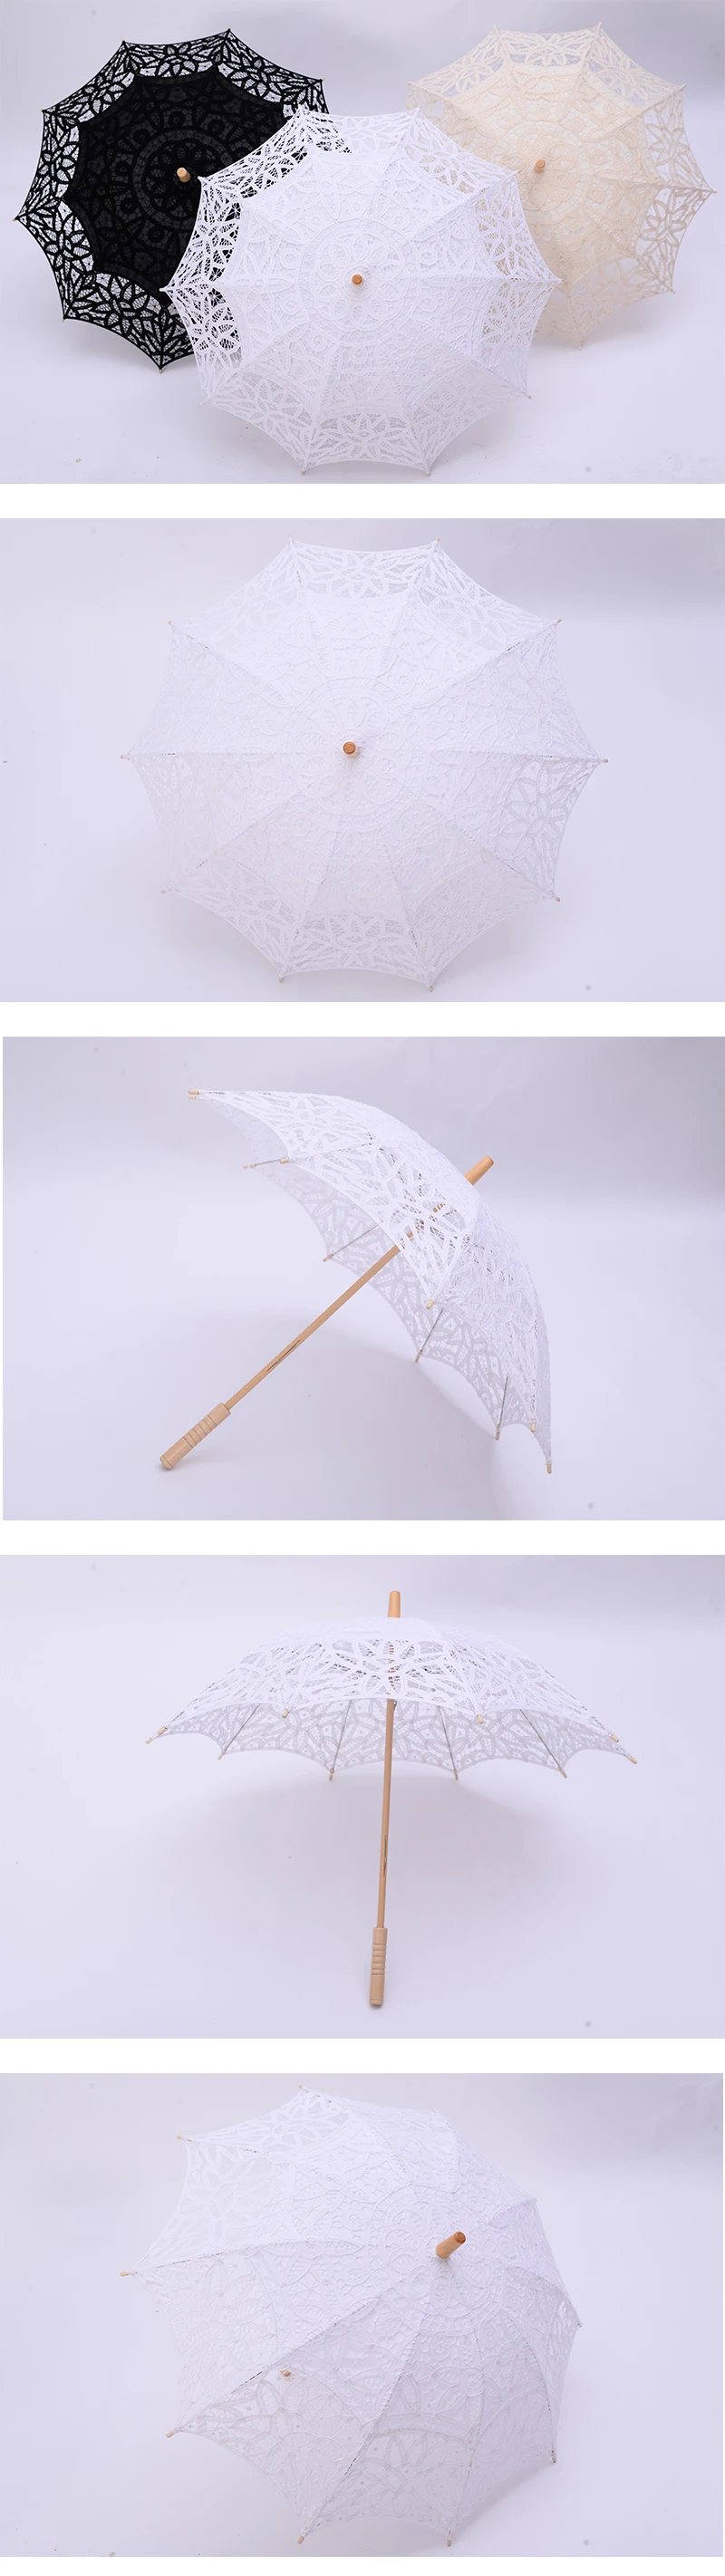 QUNYINGXIU ручной работы, Высококачественный кружевной зонтик с цветами, кружевной зонтик для фотосъемки, танцев, свадебного украшения, зонтик от солнца